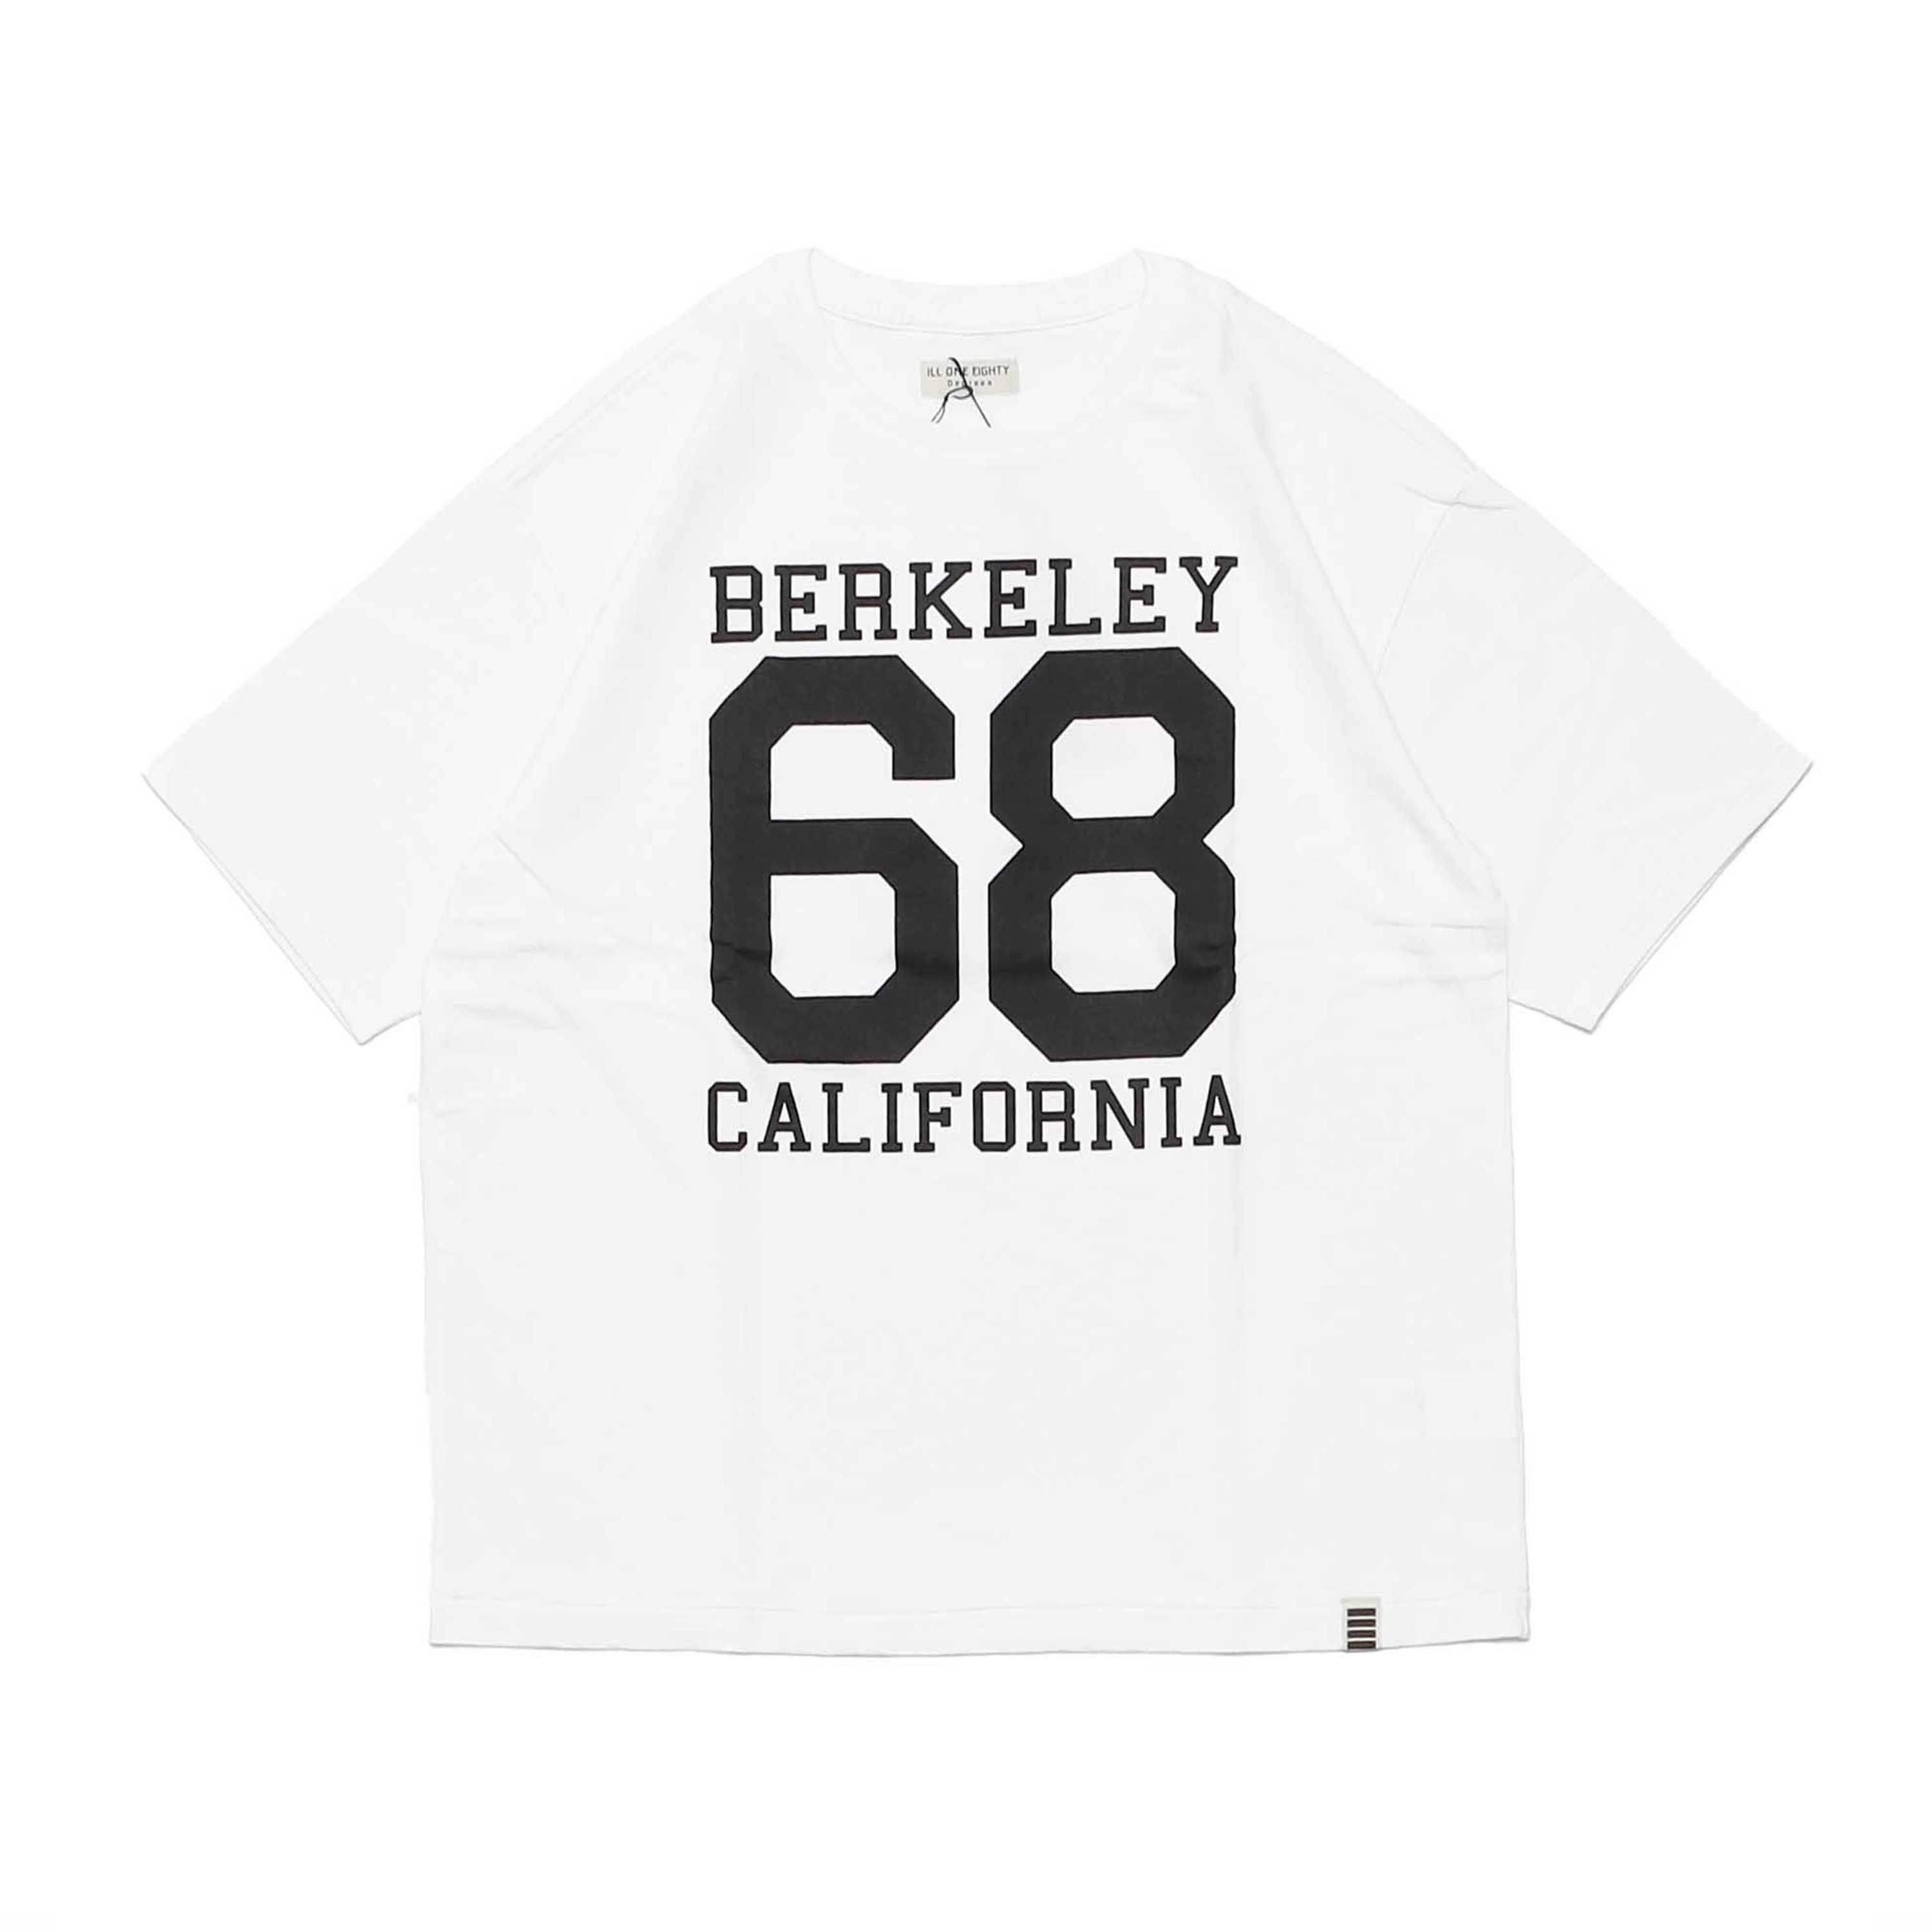 BERKELEY 68 - WHITE